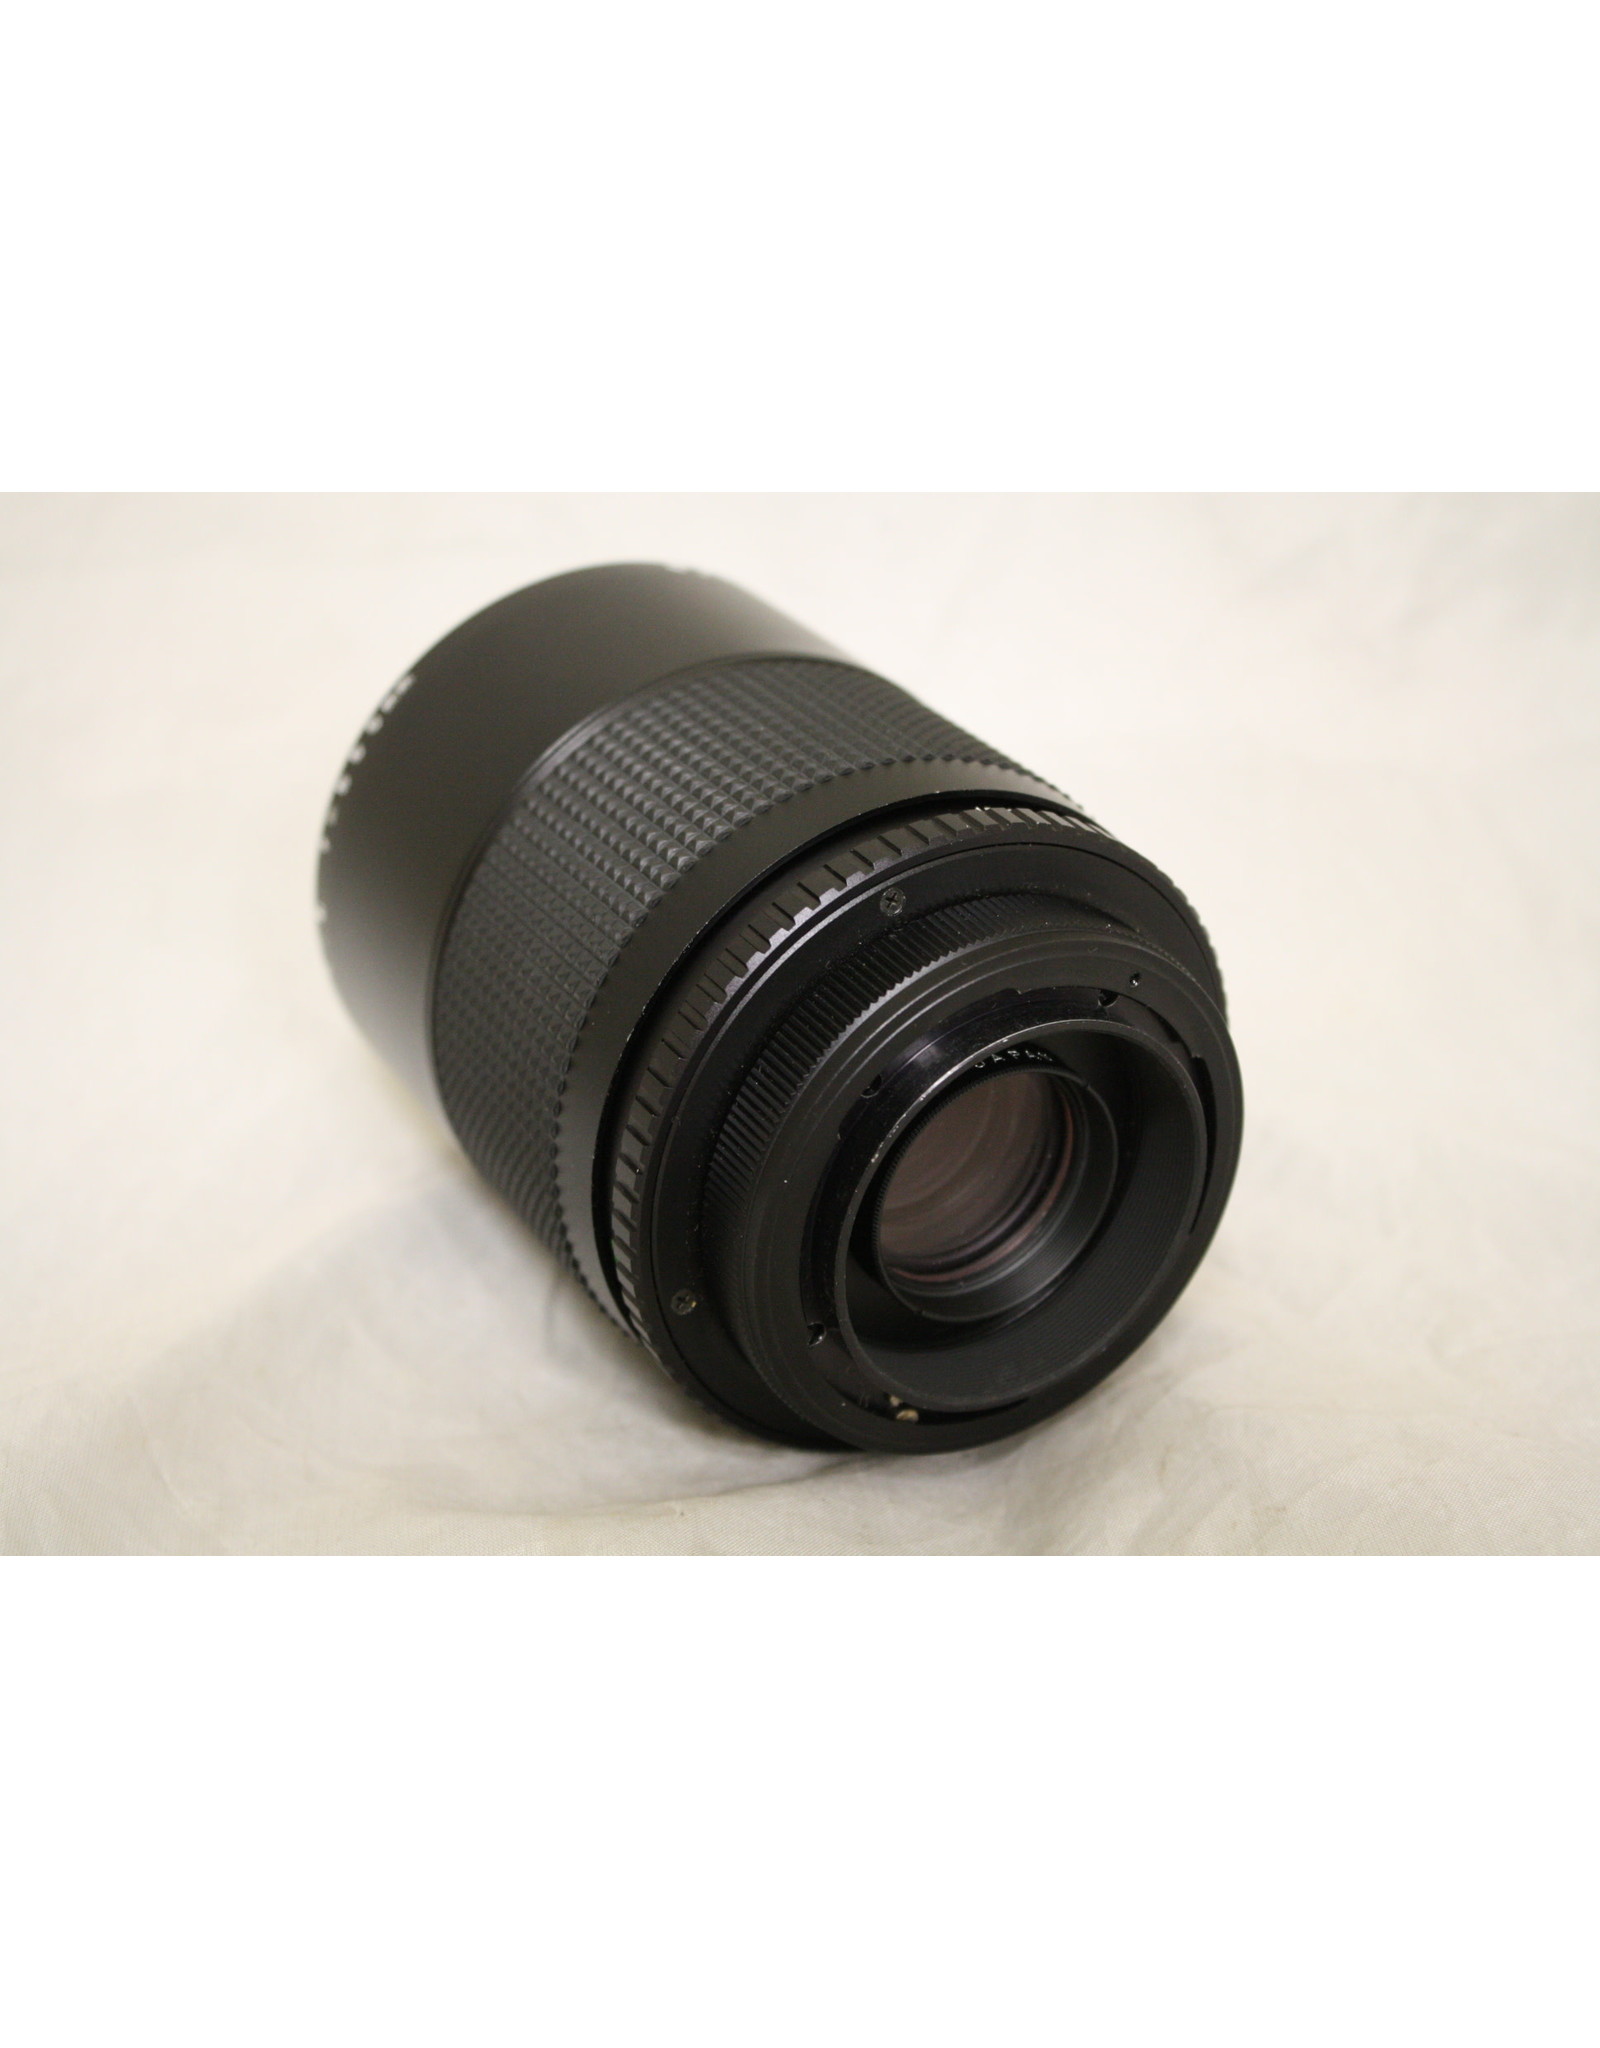 Zykkor Reflex MC 500mm Mirror Lens